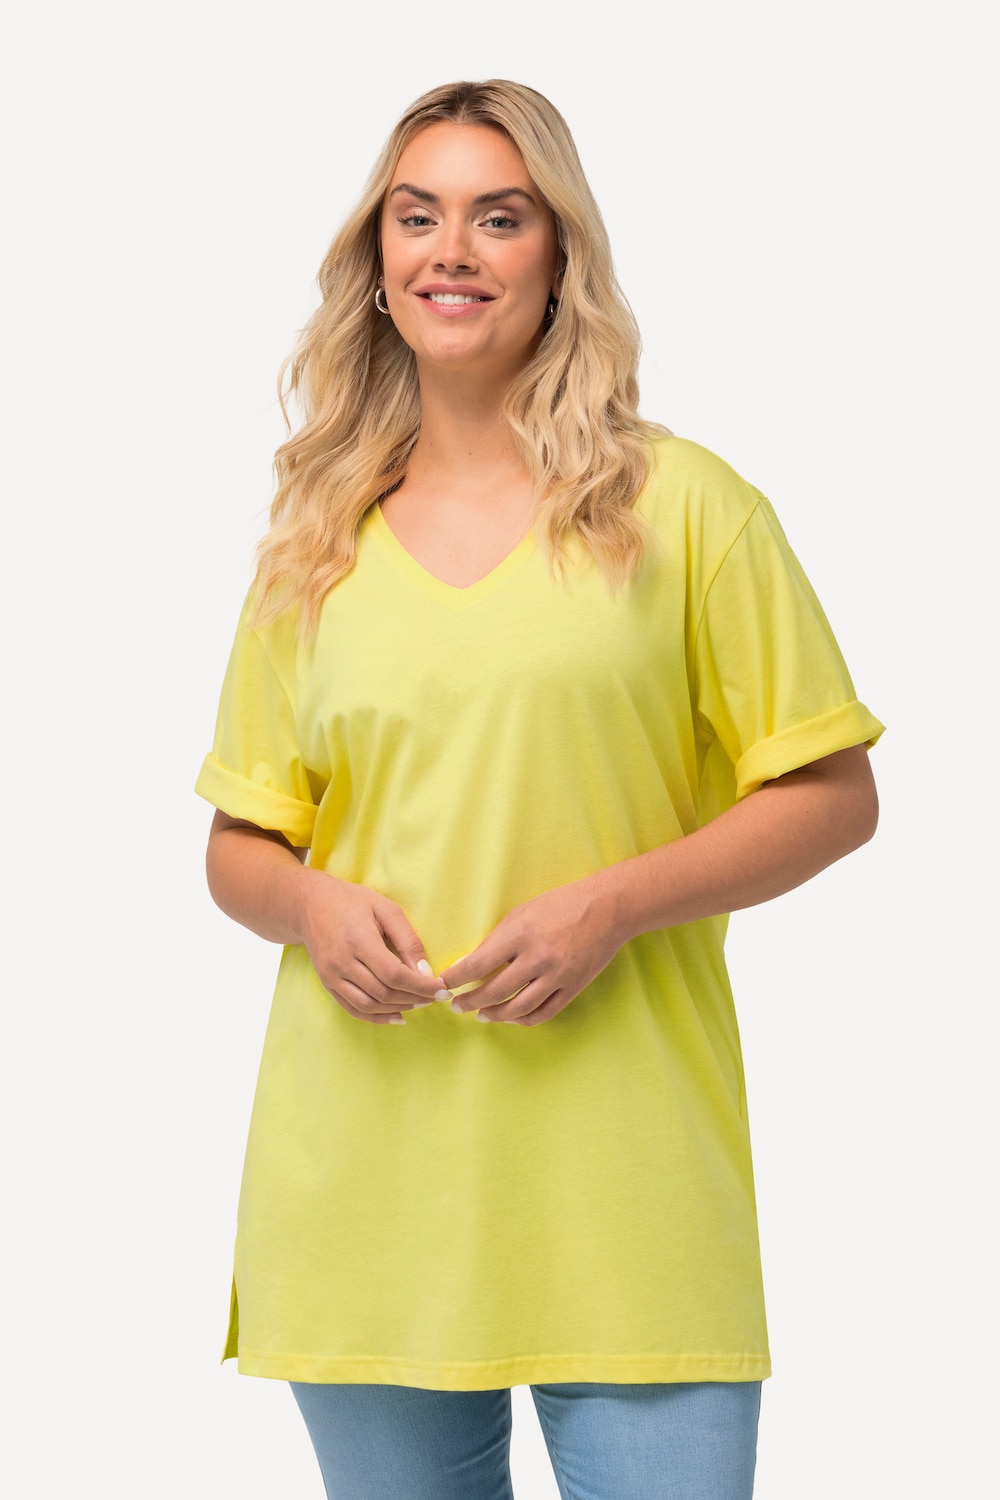 Grote Maten T-shirt, Dames, geel, Maat: 50/52, Katoen, Ulla Popken